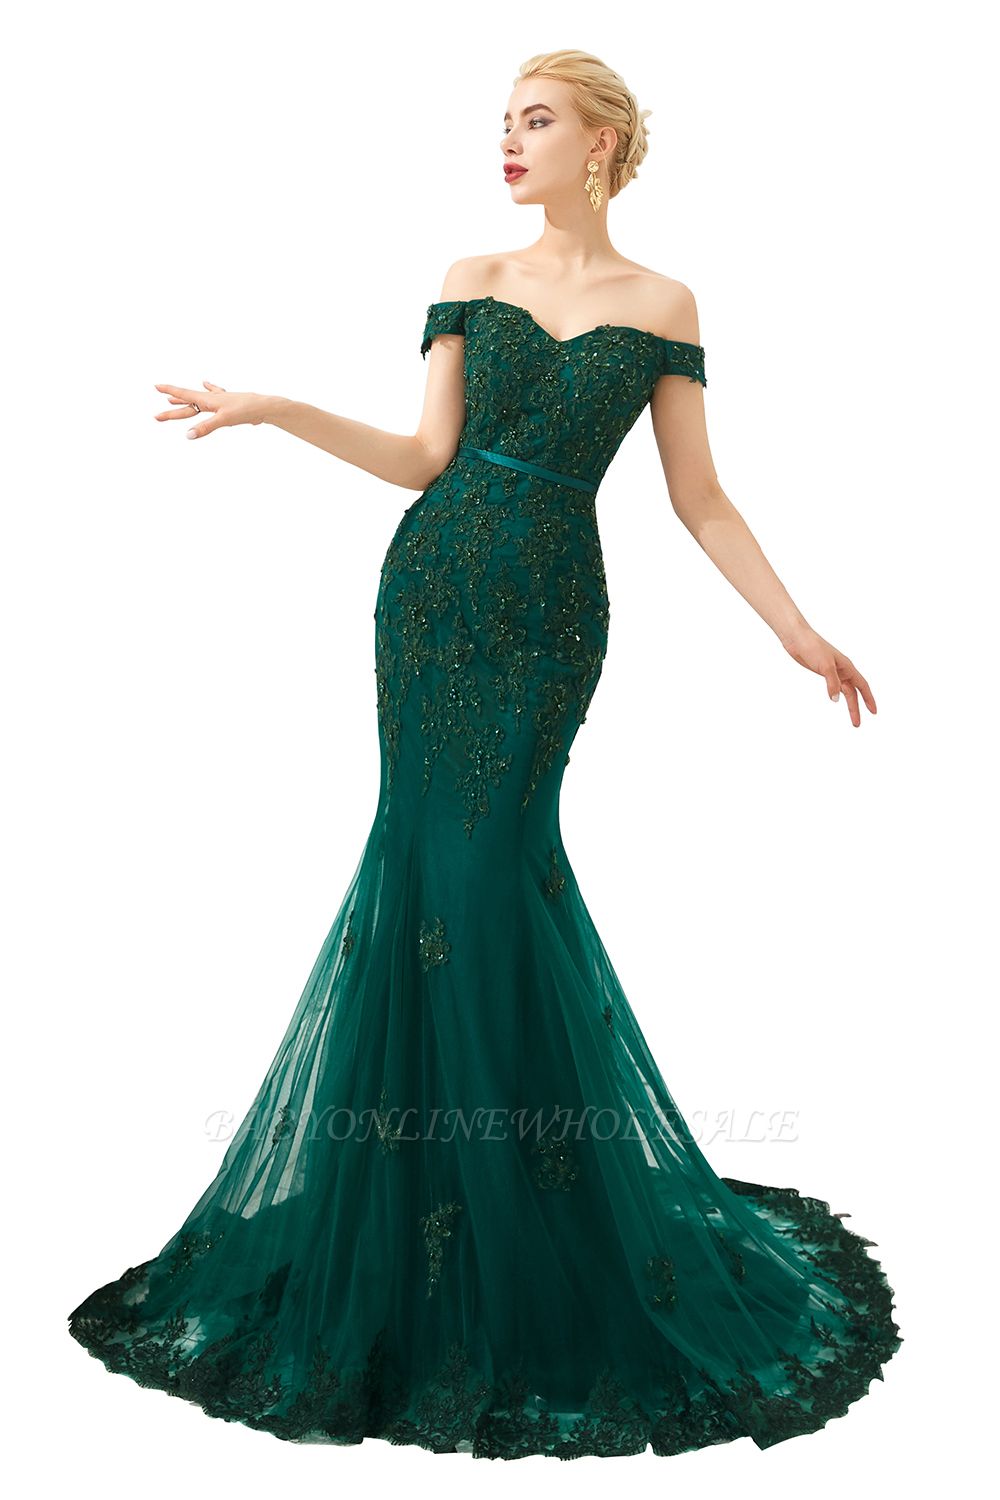 Harvey Vestido de baile de tule sereia verde esmeralda barato com apliques de renda frisada